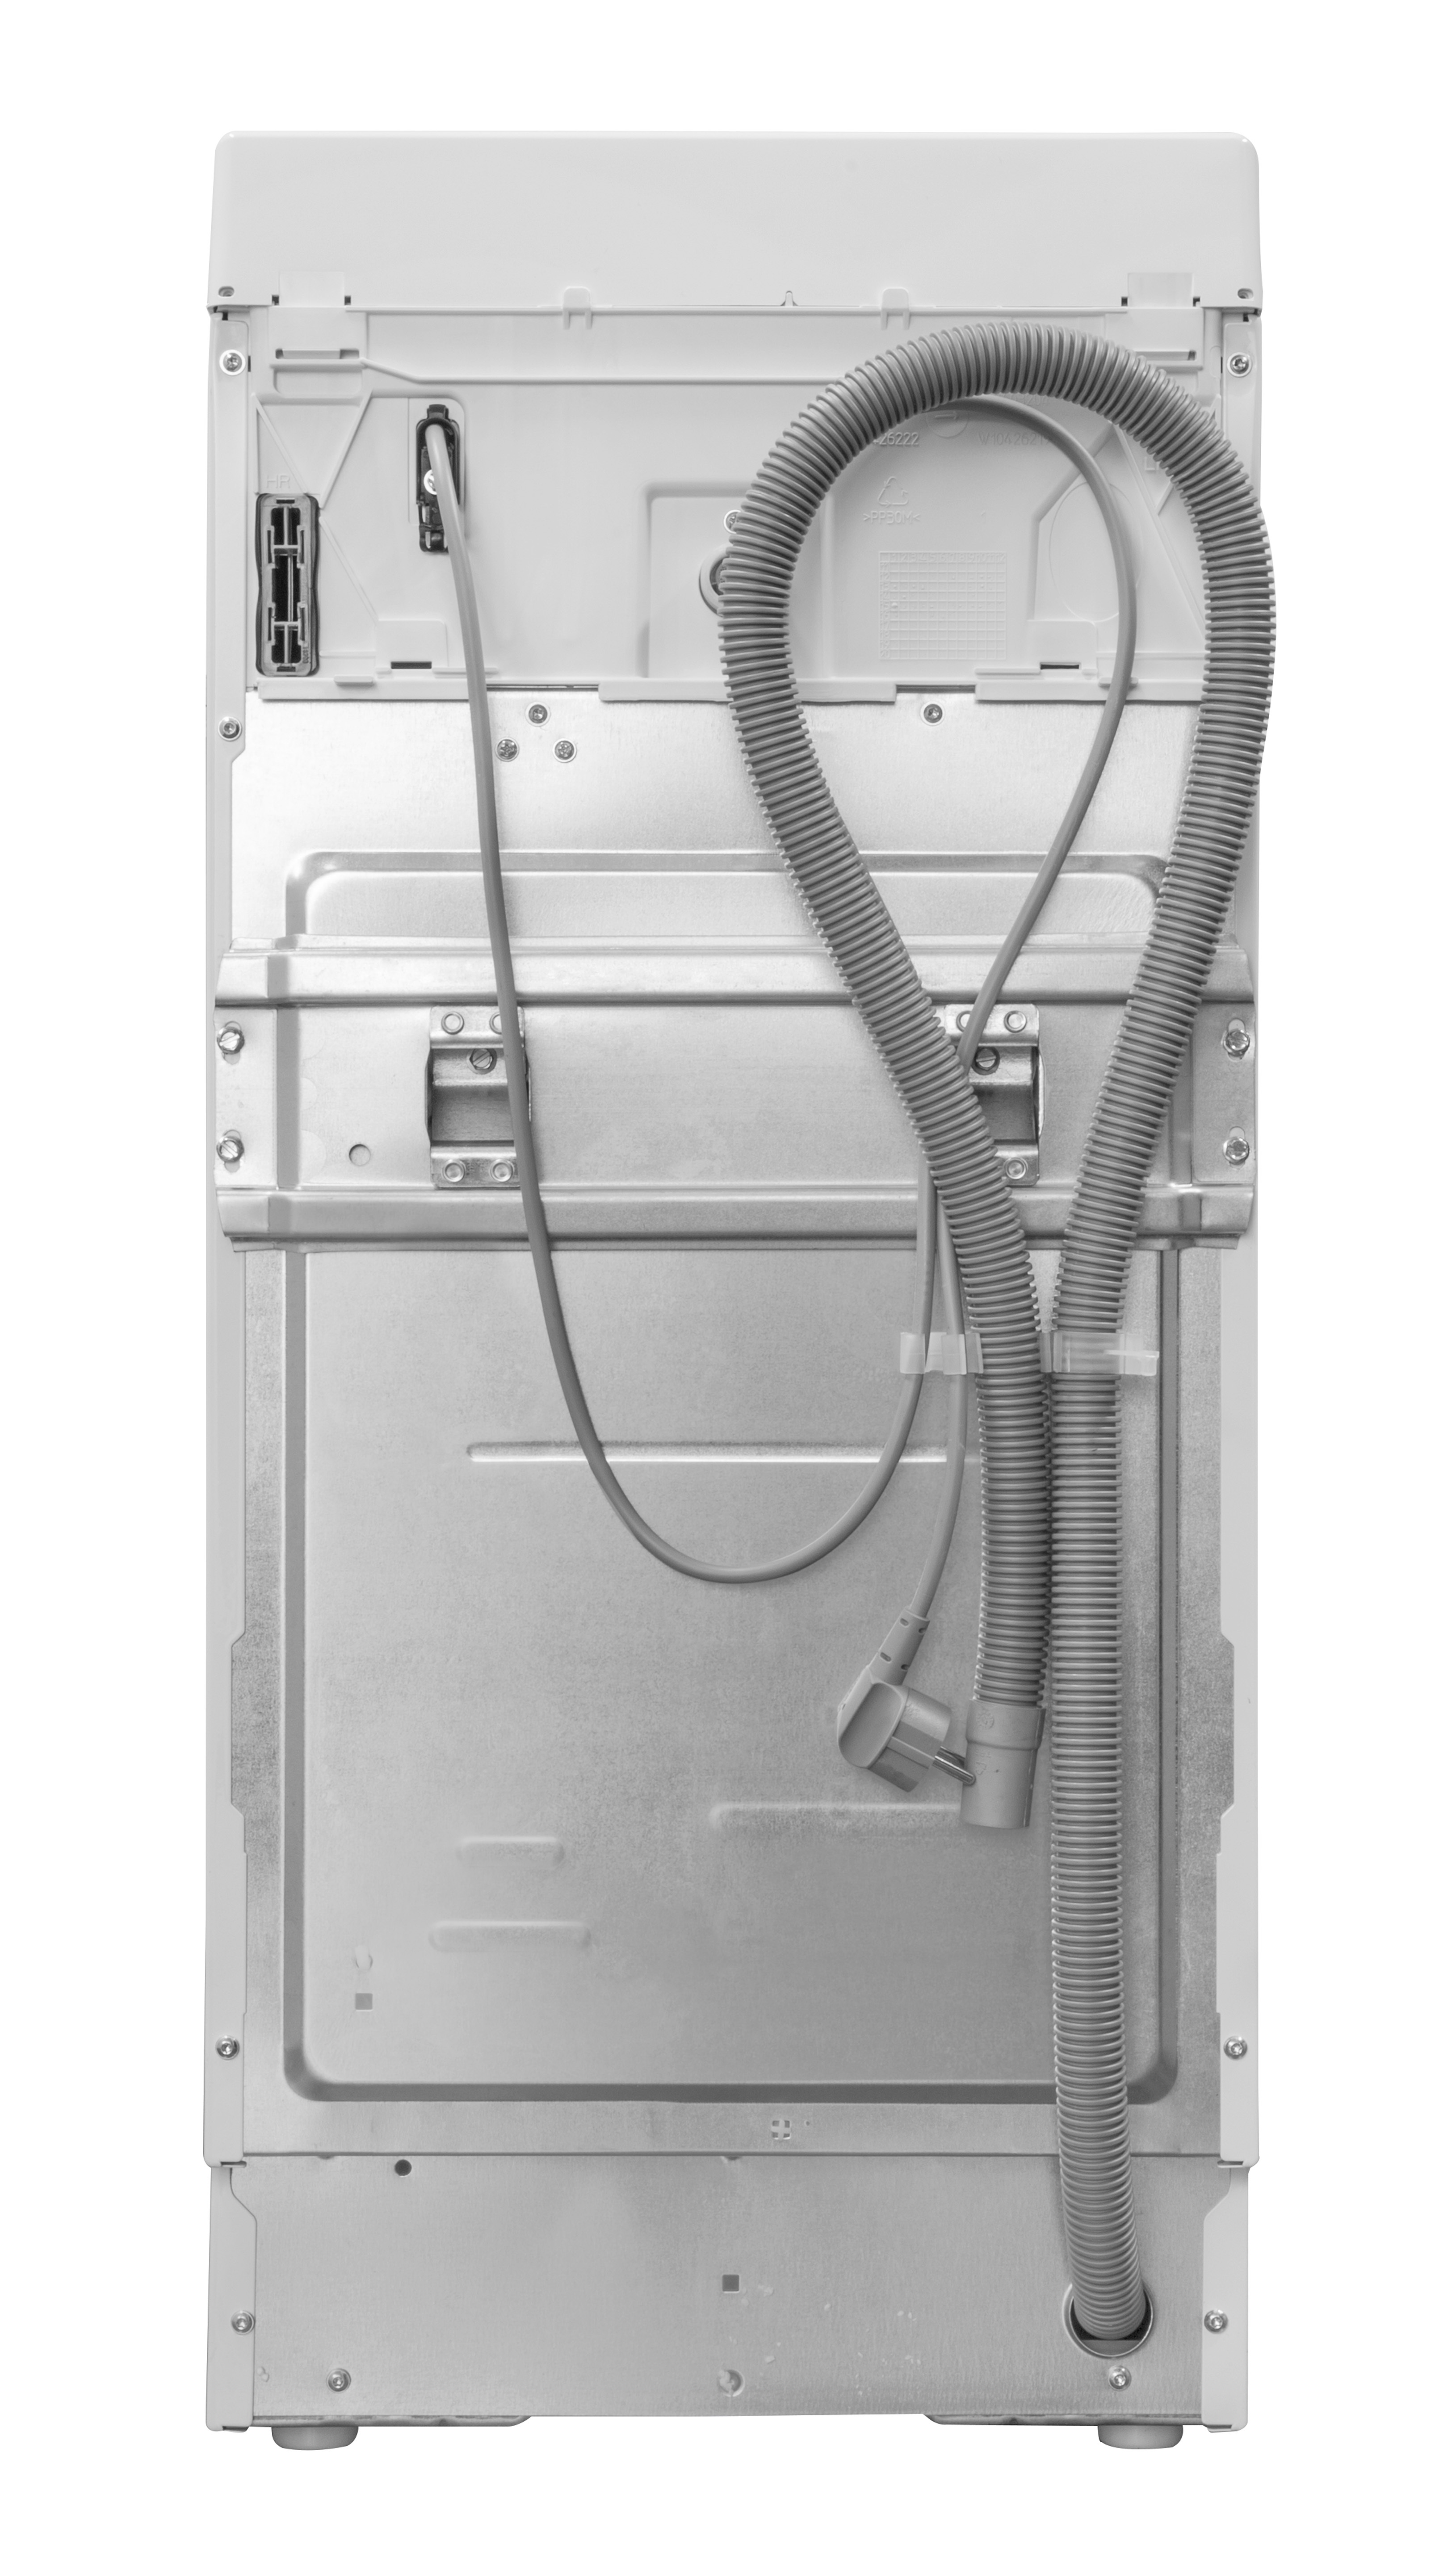 BAUKNECHT WMT ECOSTAR 6Z BW C) 1151 N kg, U/Min., Waschmaschine (6